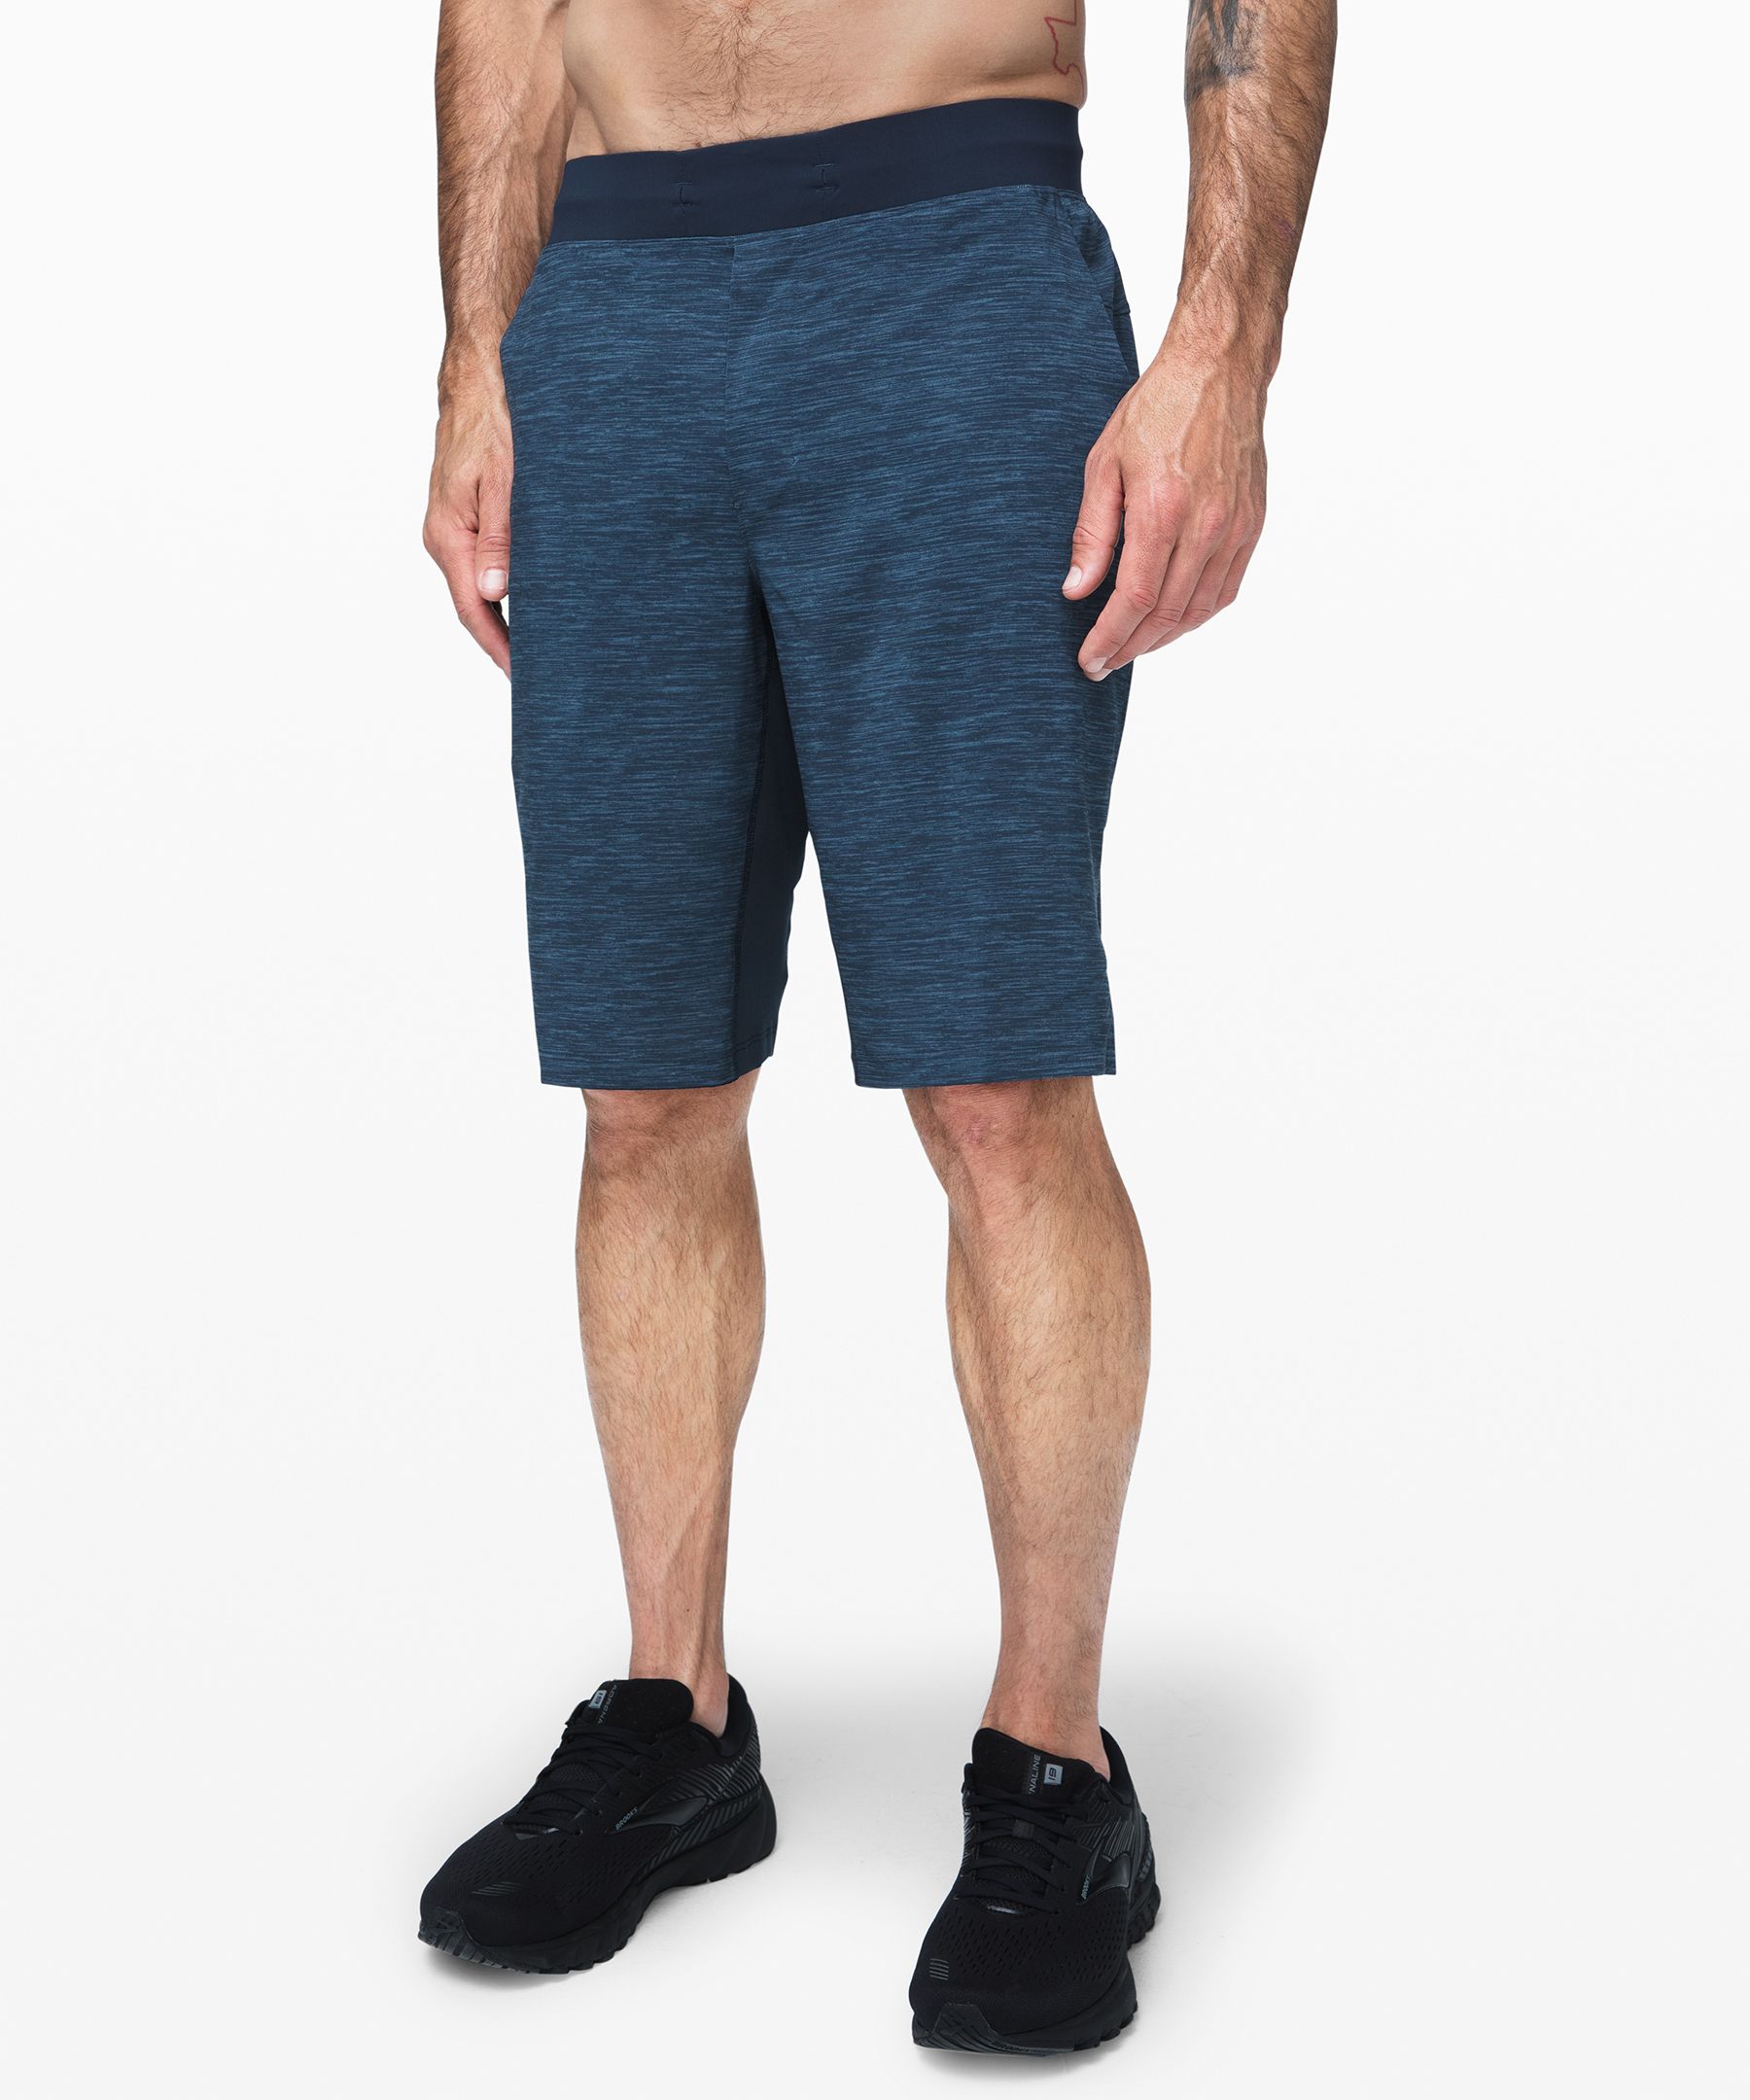 lululemon men's 11 inch shorts